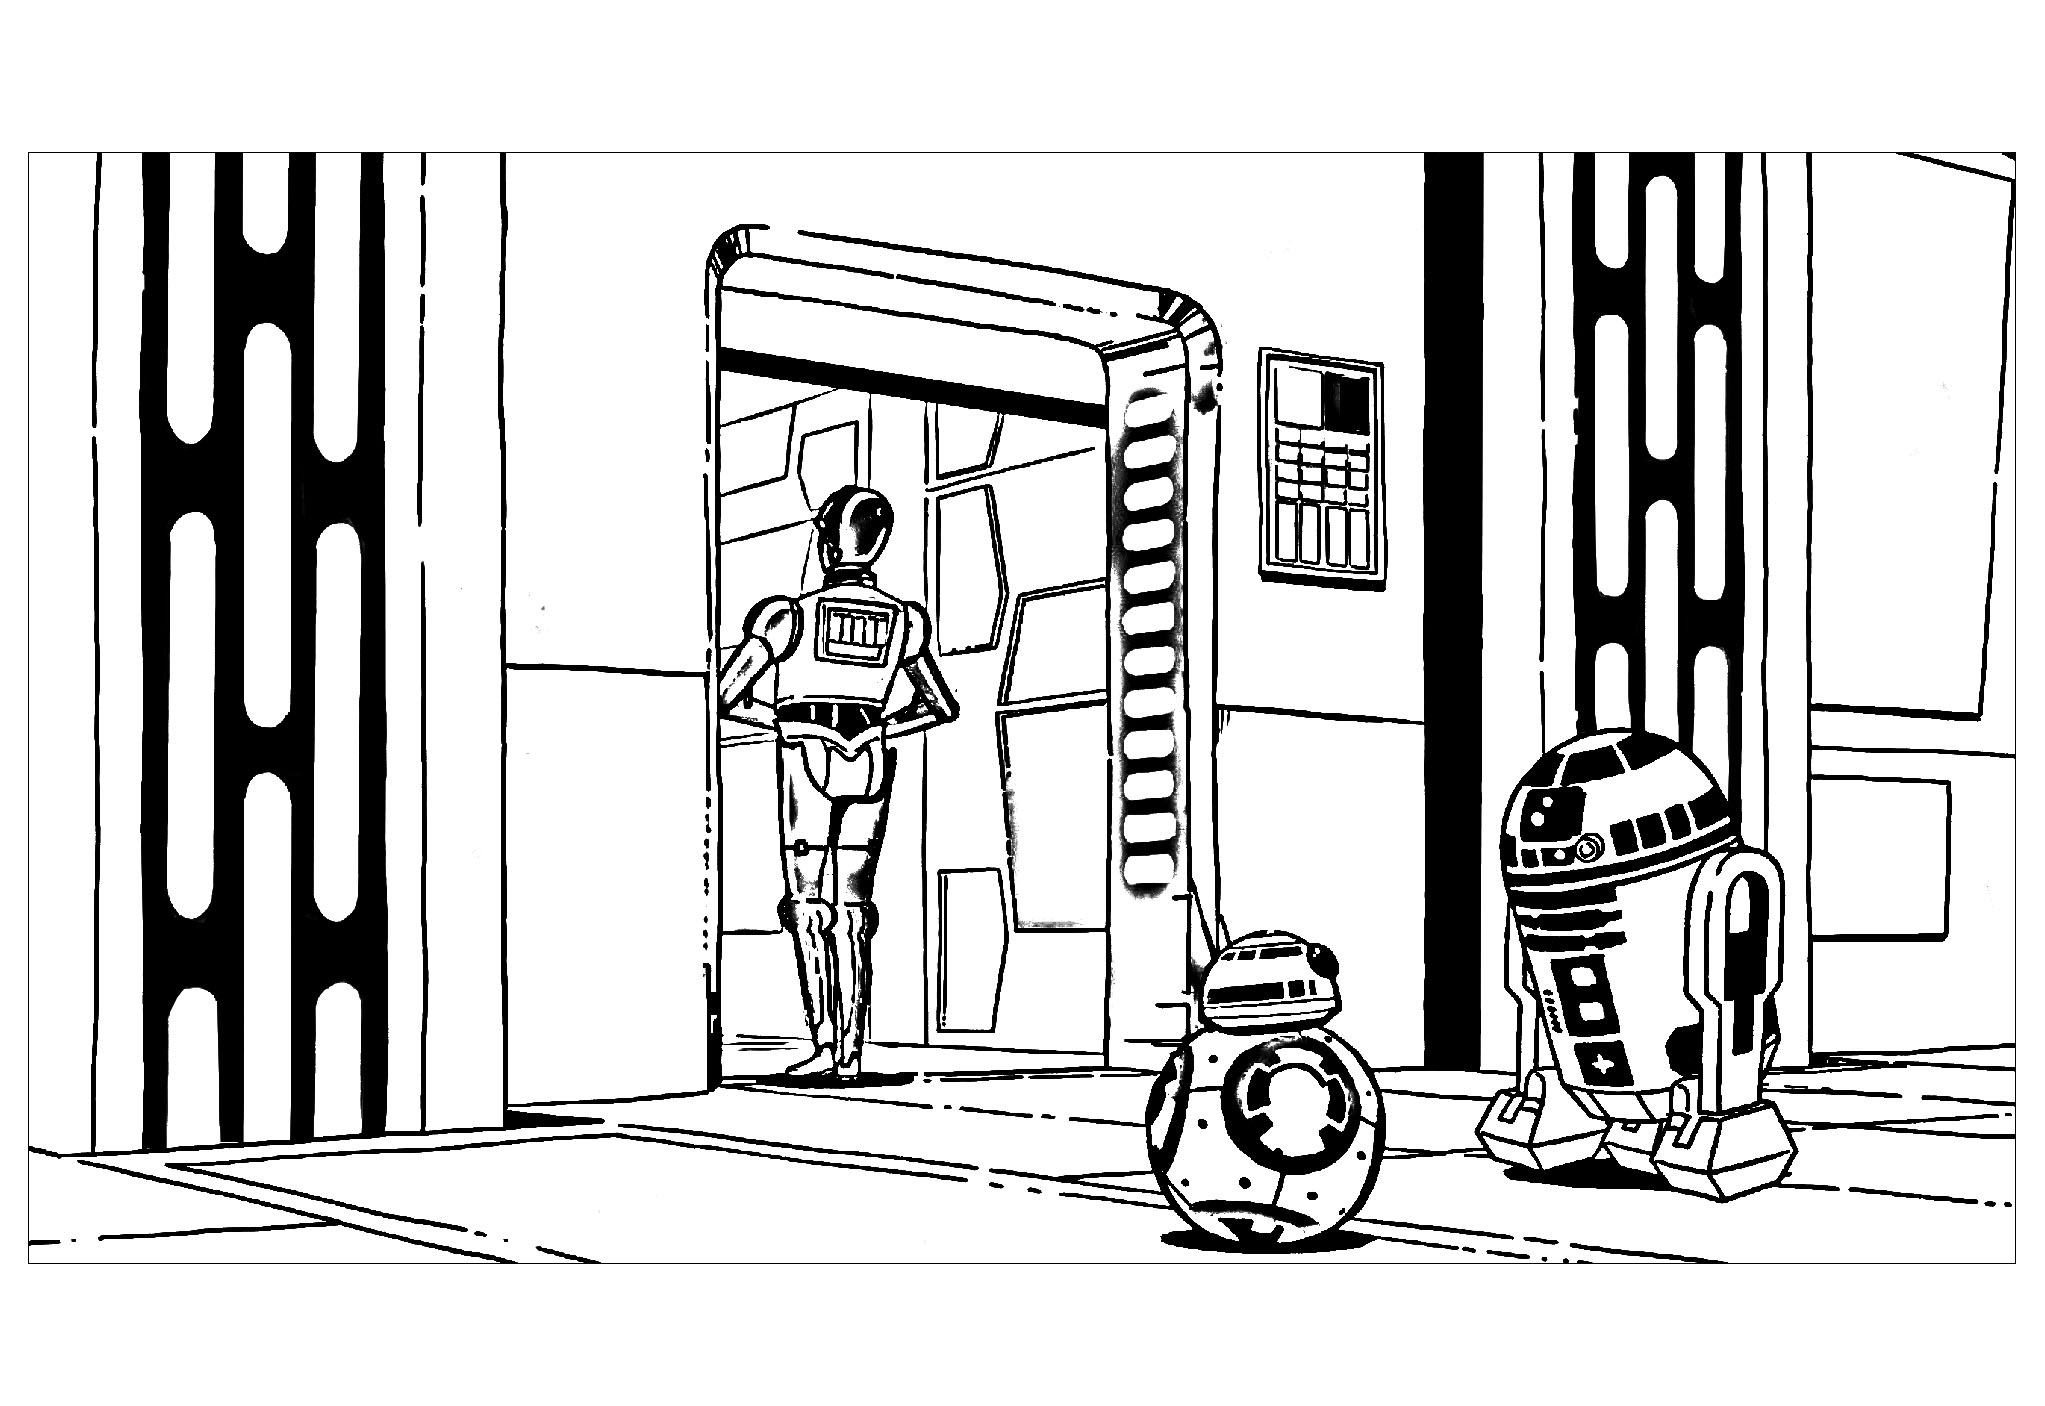 Les 3 robots emblématiques de l'univers Star Wars : R2D2, C3PO et le petit dernier BB8